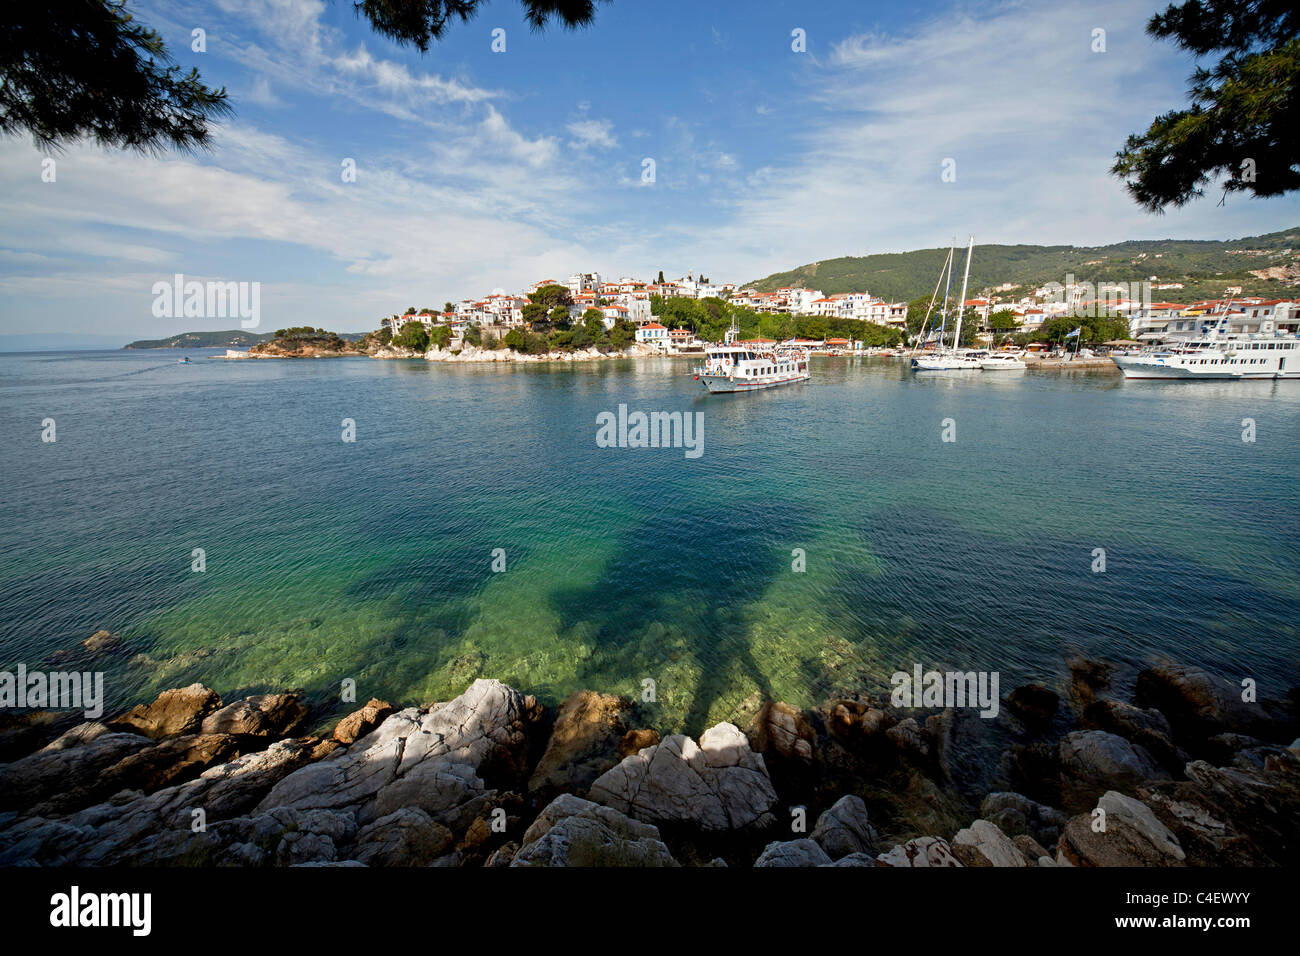 Bateaux sur le vieux port de la ville de Skiathos sur l'île de Skiathos, Sporades du Nord, Grèce Banque D'Images